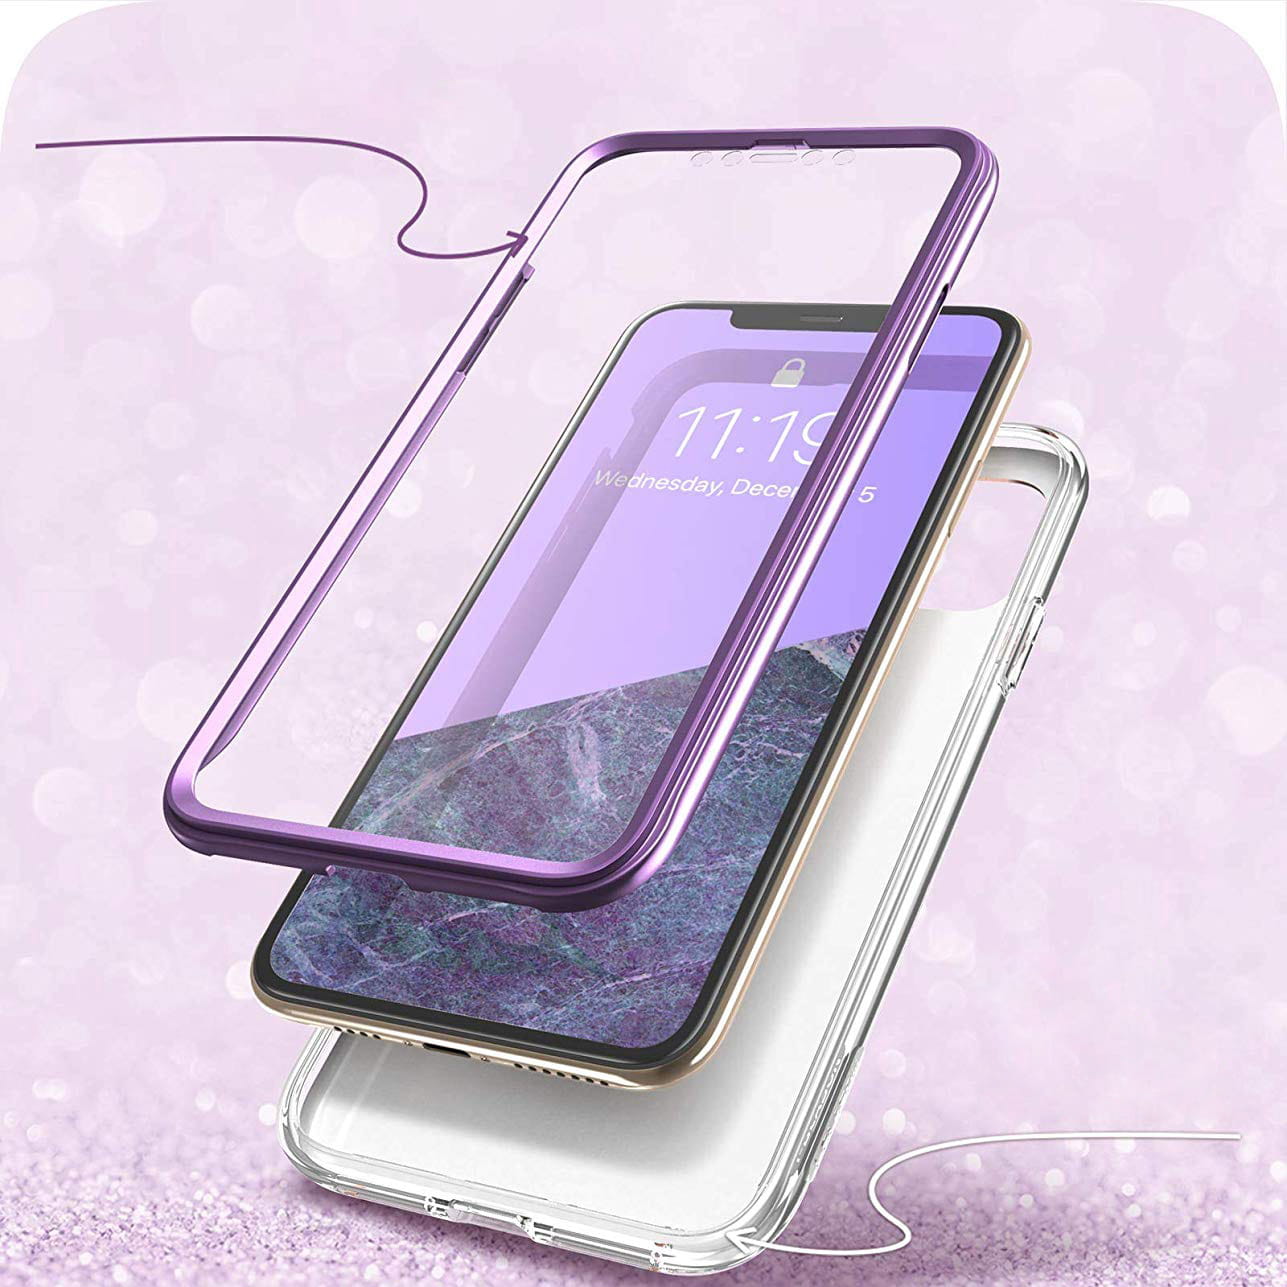 Gepanzerte Schutzhülle mit eingebautem Displayschutz Supcase i-Blason Cosmo für iPhone 11 Pro, violett.